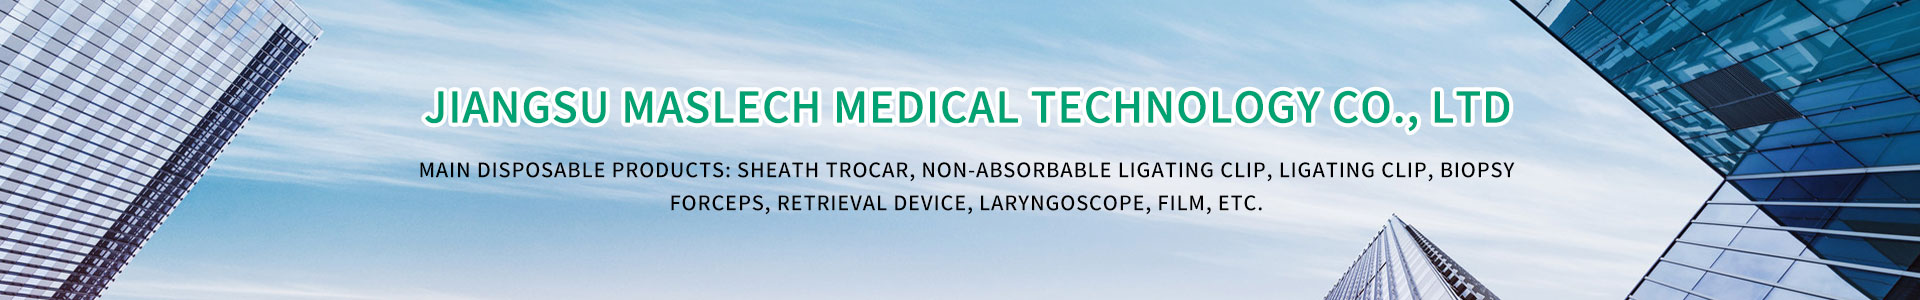 Jiangsu Maslech Medical Technology Co., Ltd.,